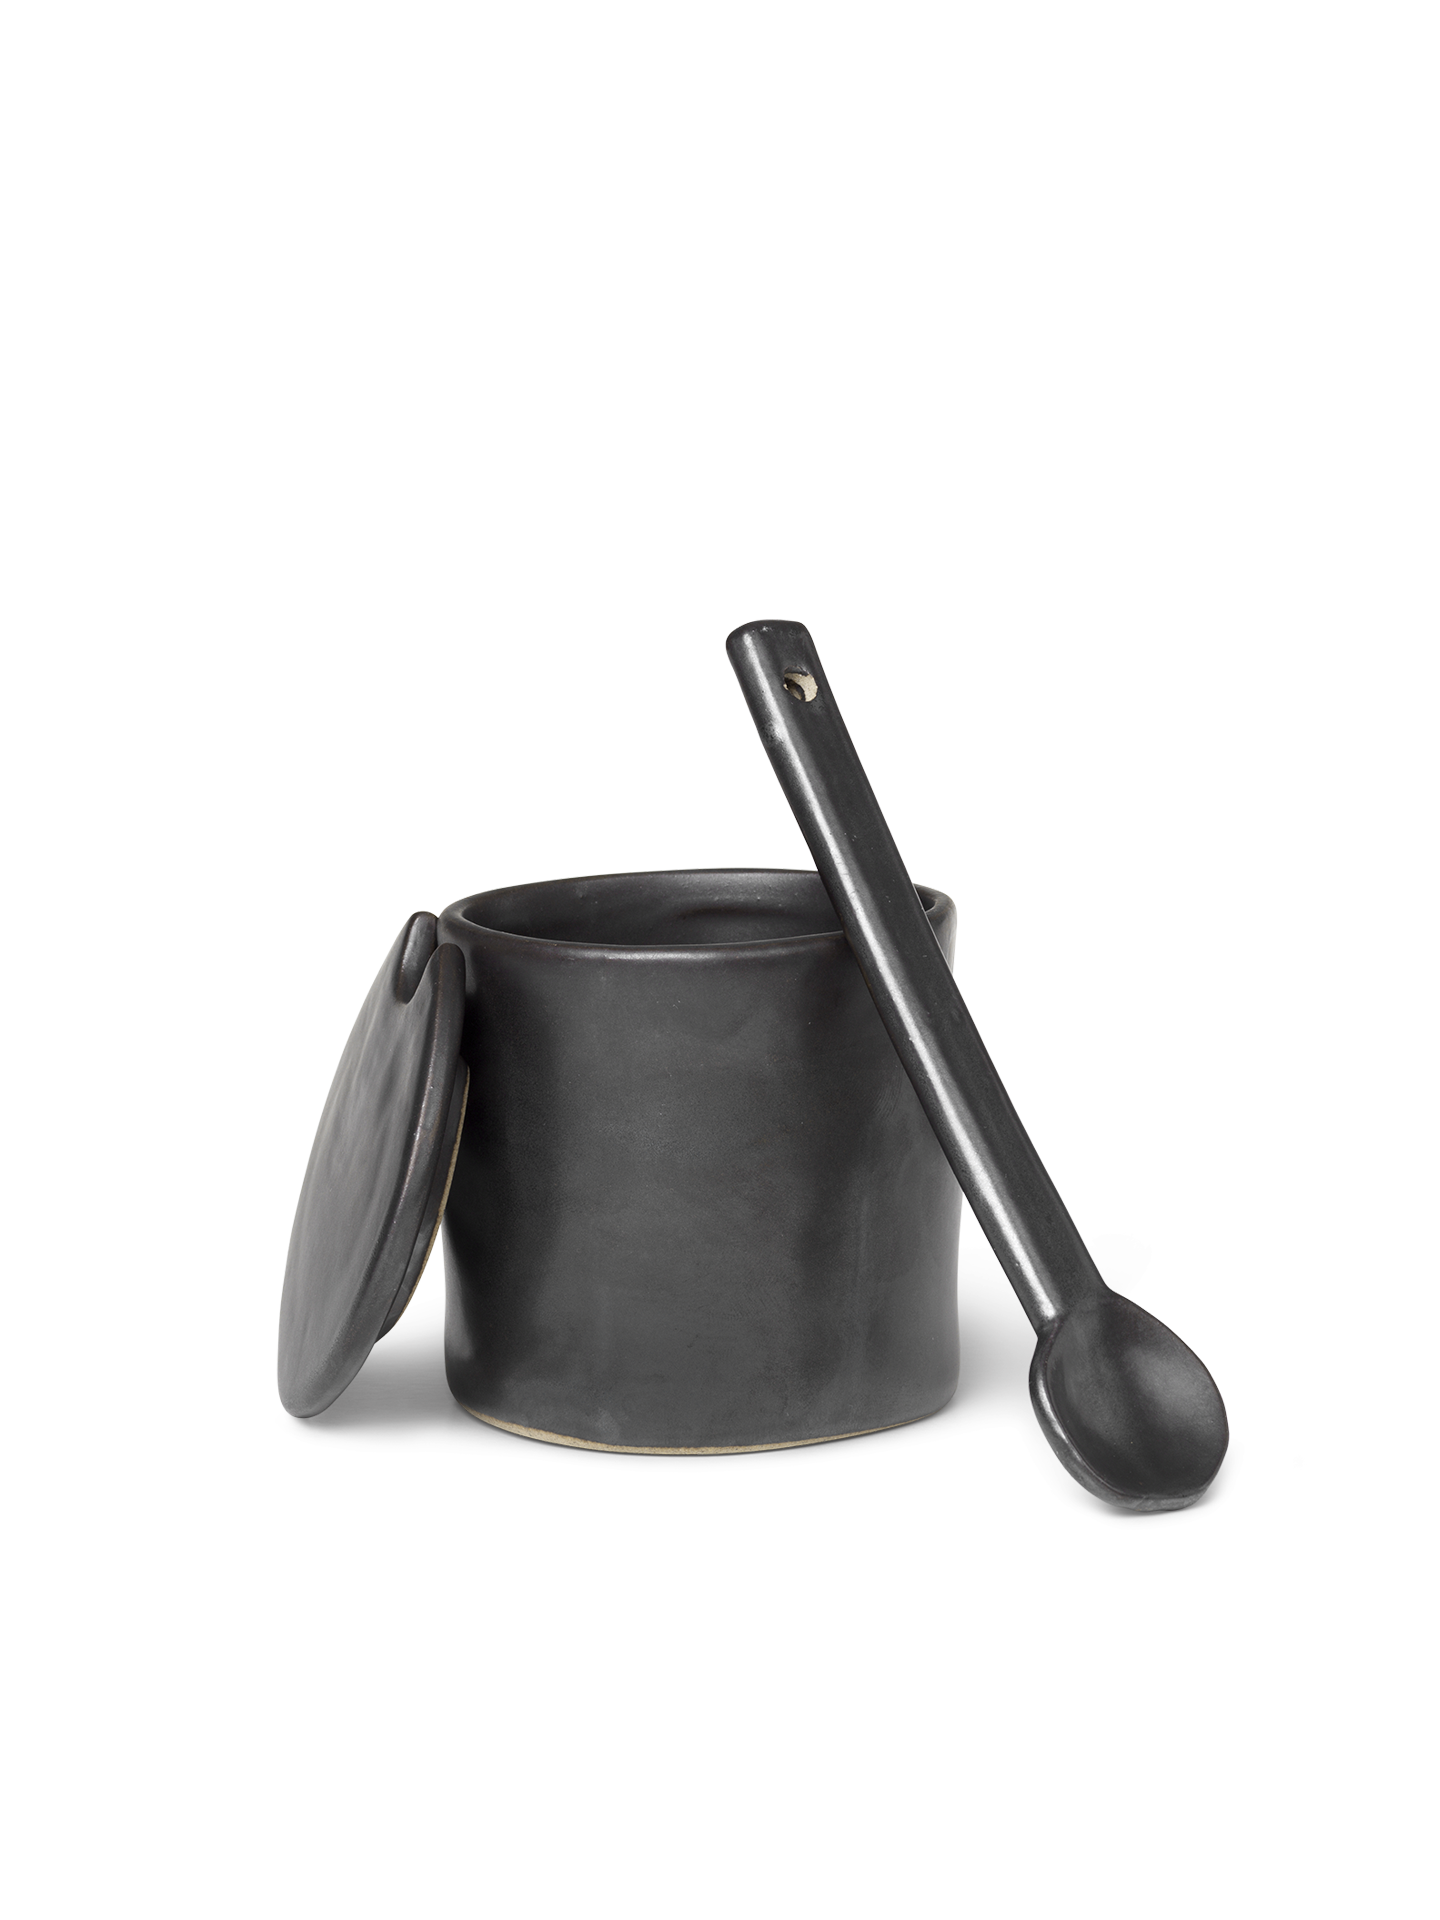 Flow Jar with spoon - Black